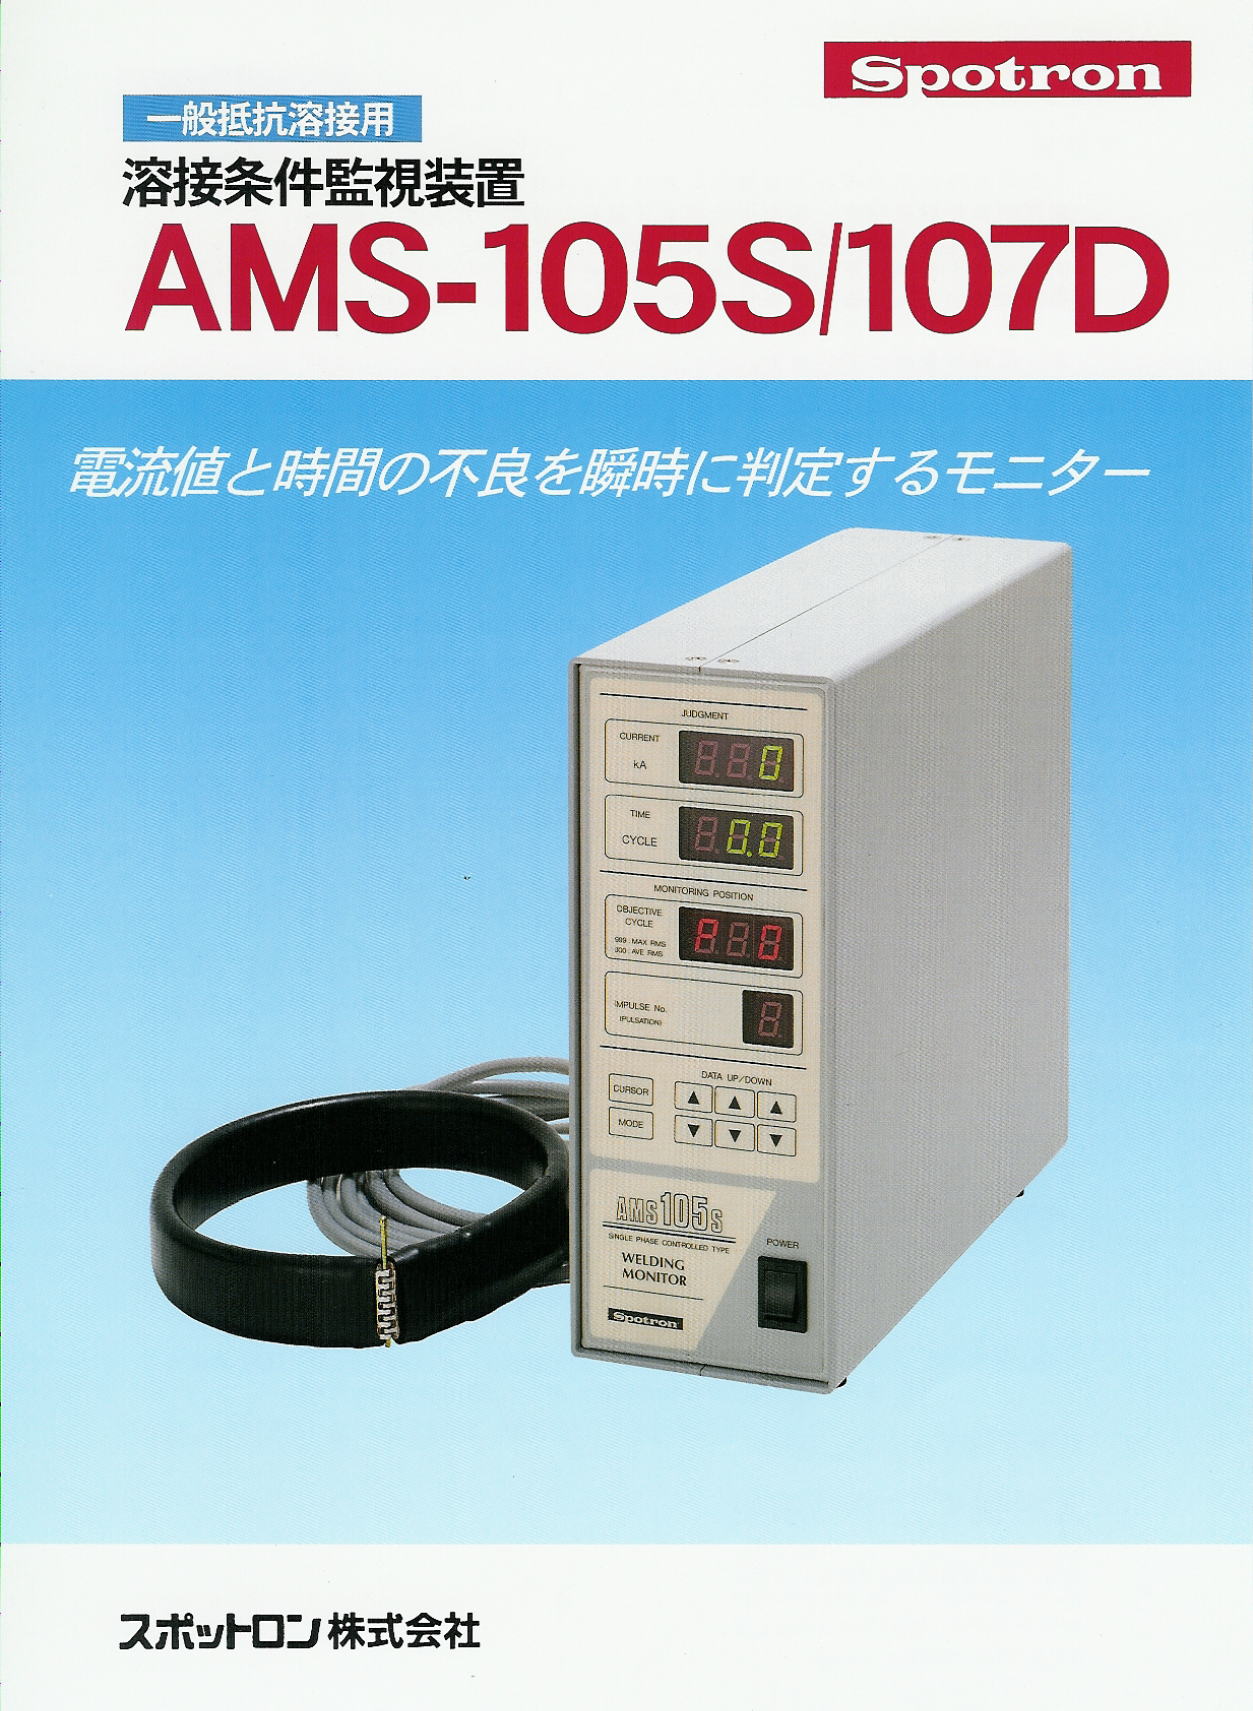 一般抵抗溶接用　溶接条件監視装置　AMS-105S / AMS-107D